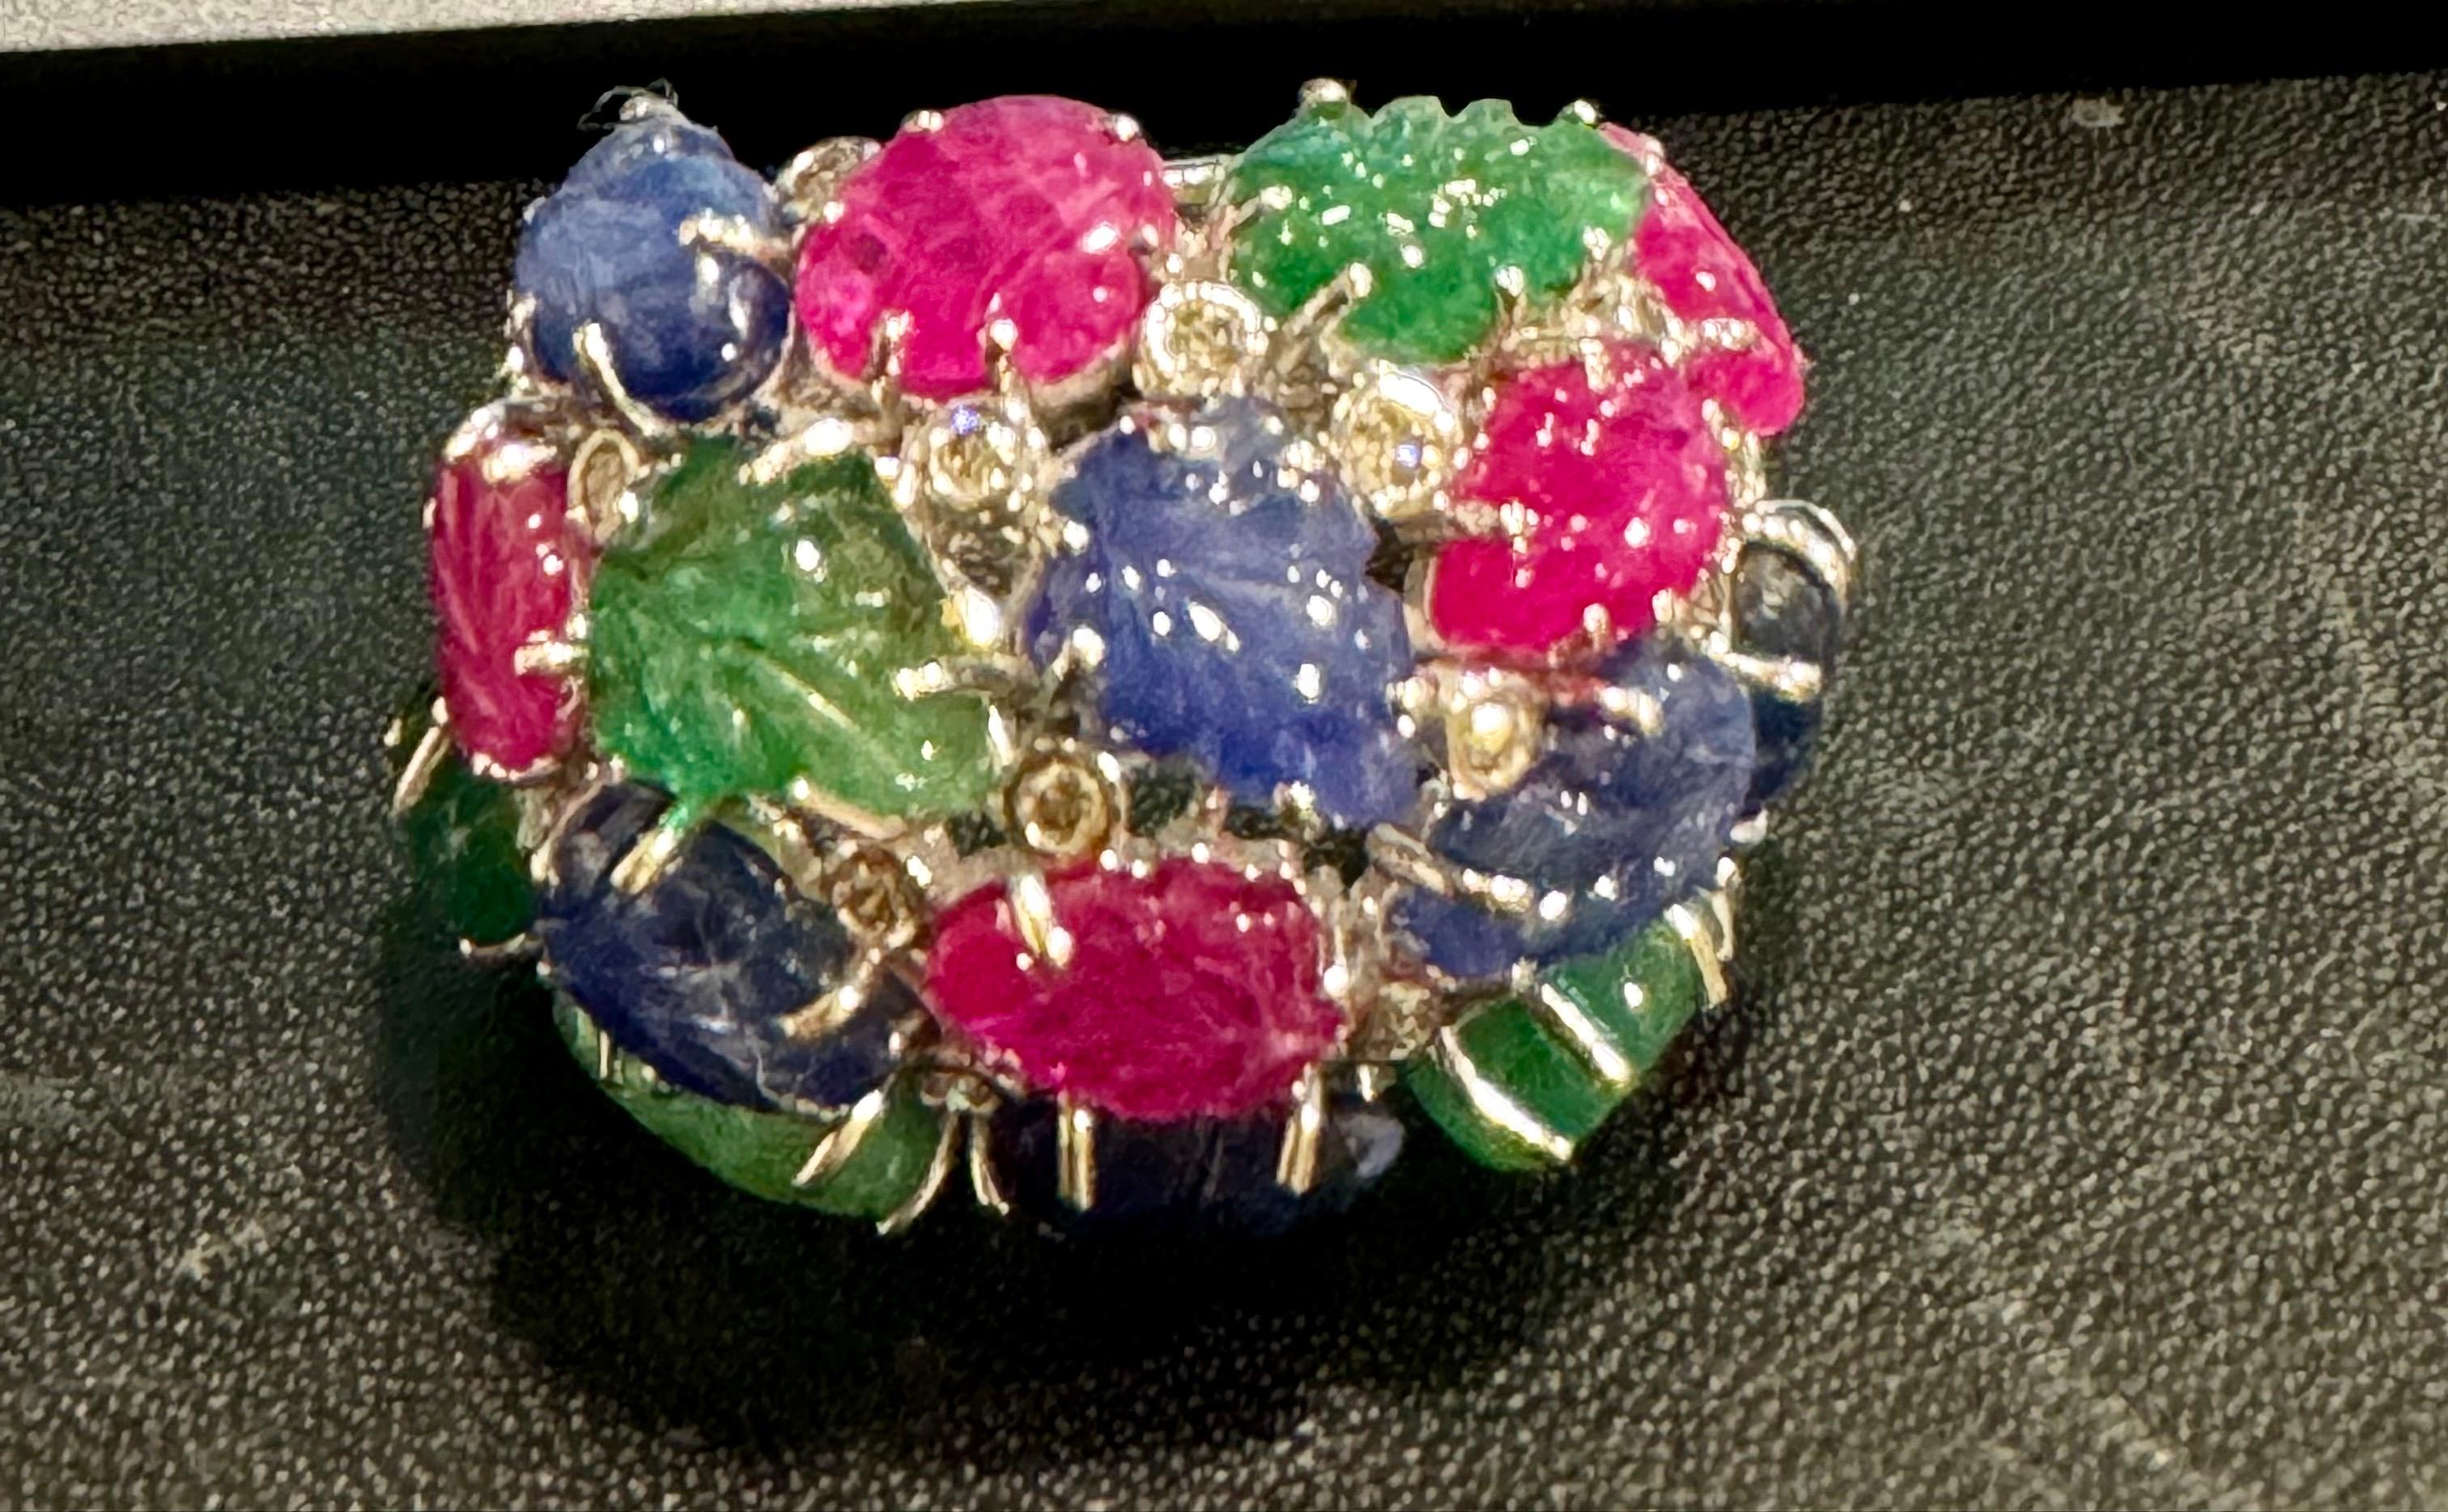 Der riesige Tutti Frutti 18K Ring, verziert mit Smaragden, Rubinen, Saphiren und Diamanten in Größe 9, ist ein seltener Fund mit exquisit geschnitzten Edelsteinblättern. Aus den 1920er-1930er Jahren stammend, wurde diese Art von Schmuck vorwiegend